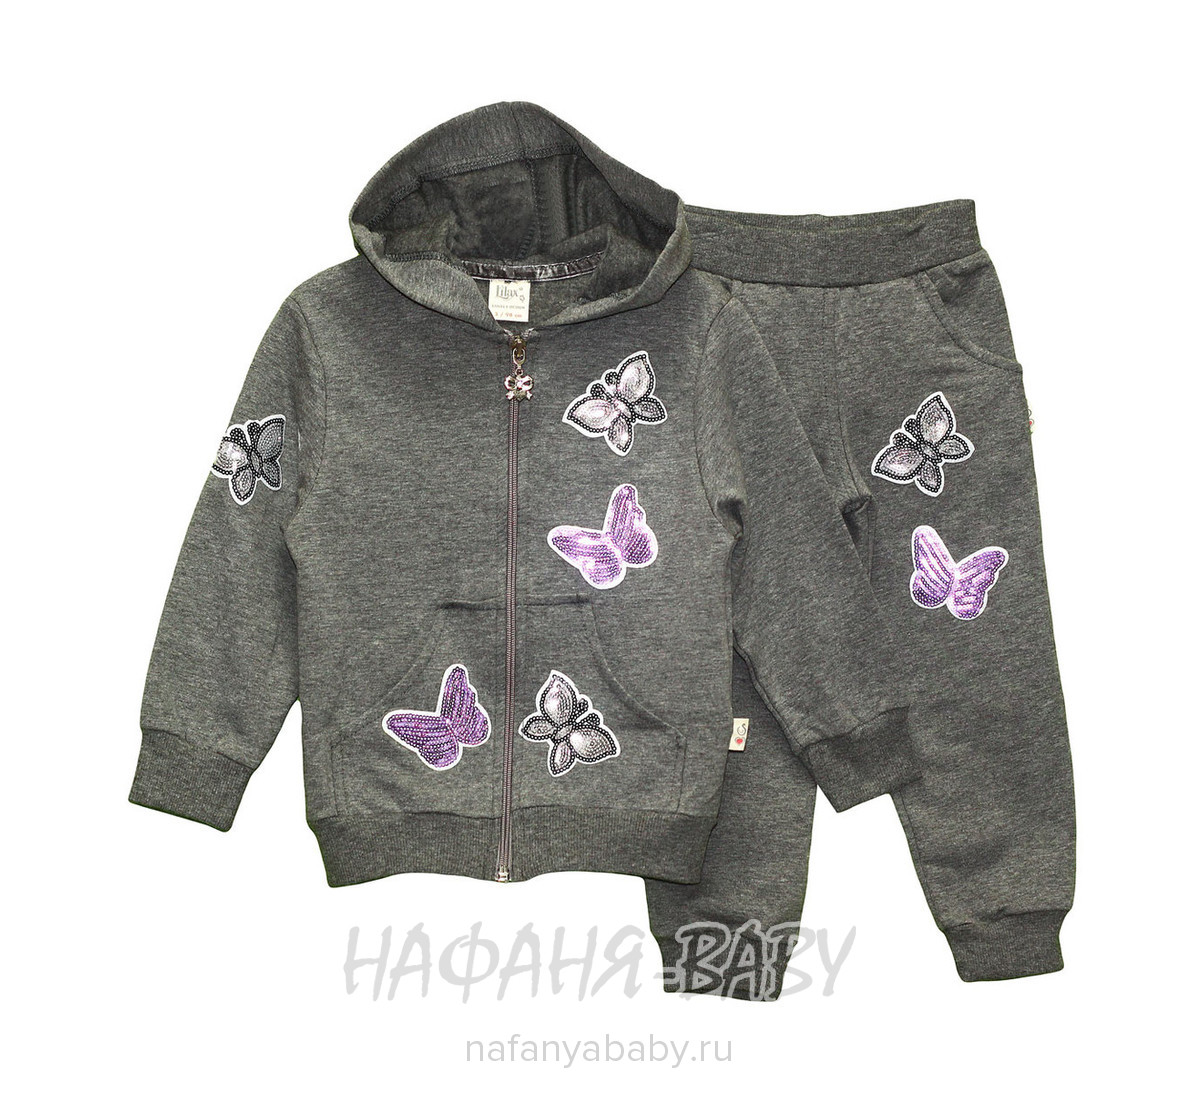 Детский костюм (кофта+брюки) LILAX, купить в интернет магазине Нафаня. арт: 83863.